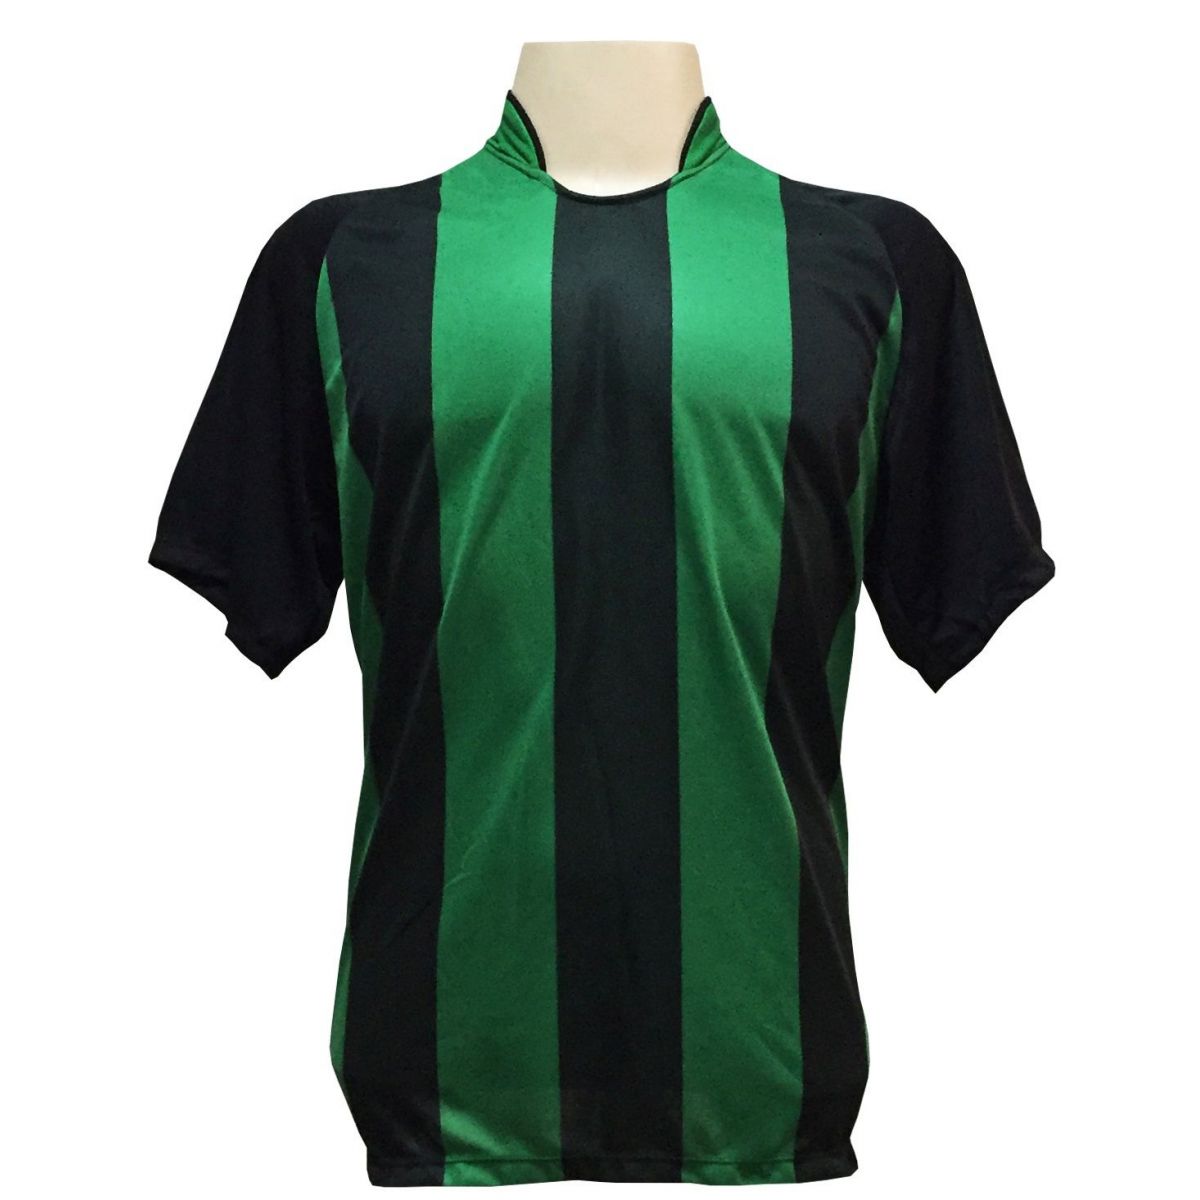 Uniforme Esportivo com 20 camisas modelo Milan Preto/Verde + 20 calções modelo Madrid Preto + Brindes